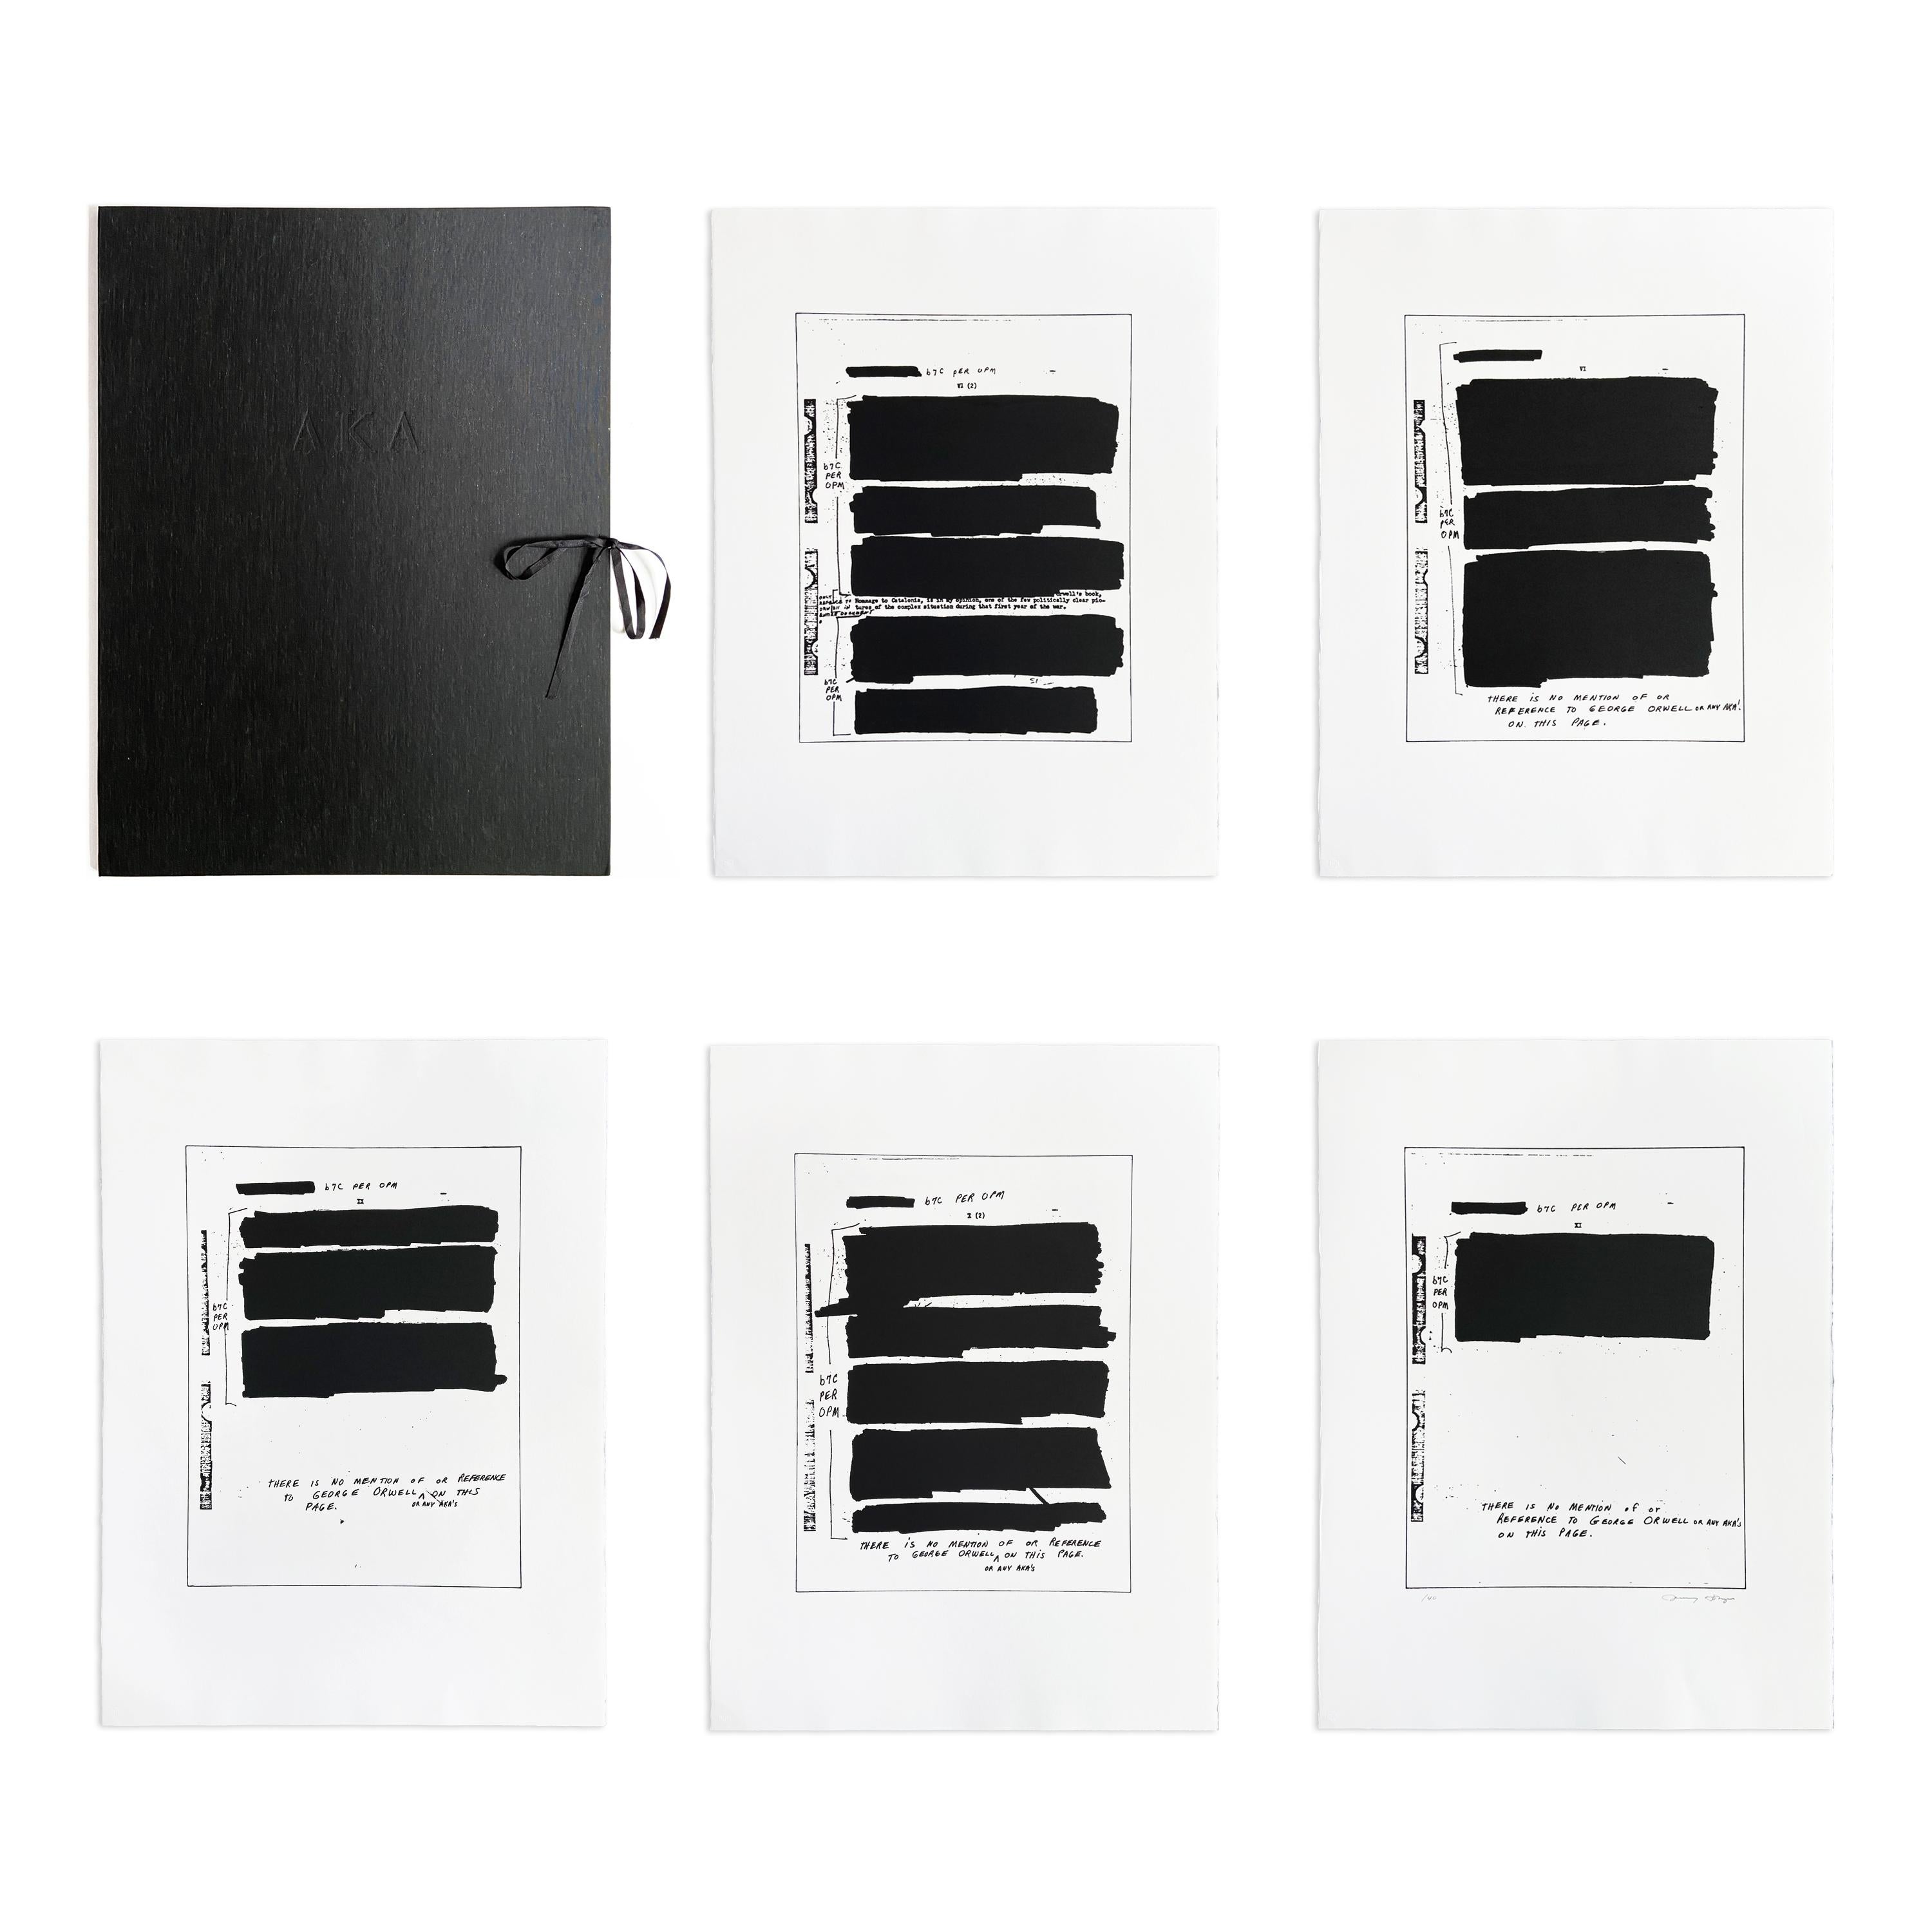 Jenny Holzer (Amerikanerin, geb. 1950)
AKA, 2006
Medium: Fünf Radierungen auf Magnani-Pescia-Papier (mit Titelblatt, Blätter lose, in originaler schwarzer Seidenmappe)
Abmessungen: 75,6 x 56,3 cm (29 3/4 x 22 1/8 Zoll)
Auflage 40: Handsigniert und